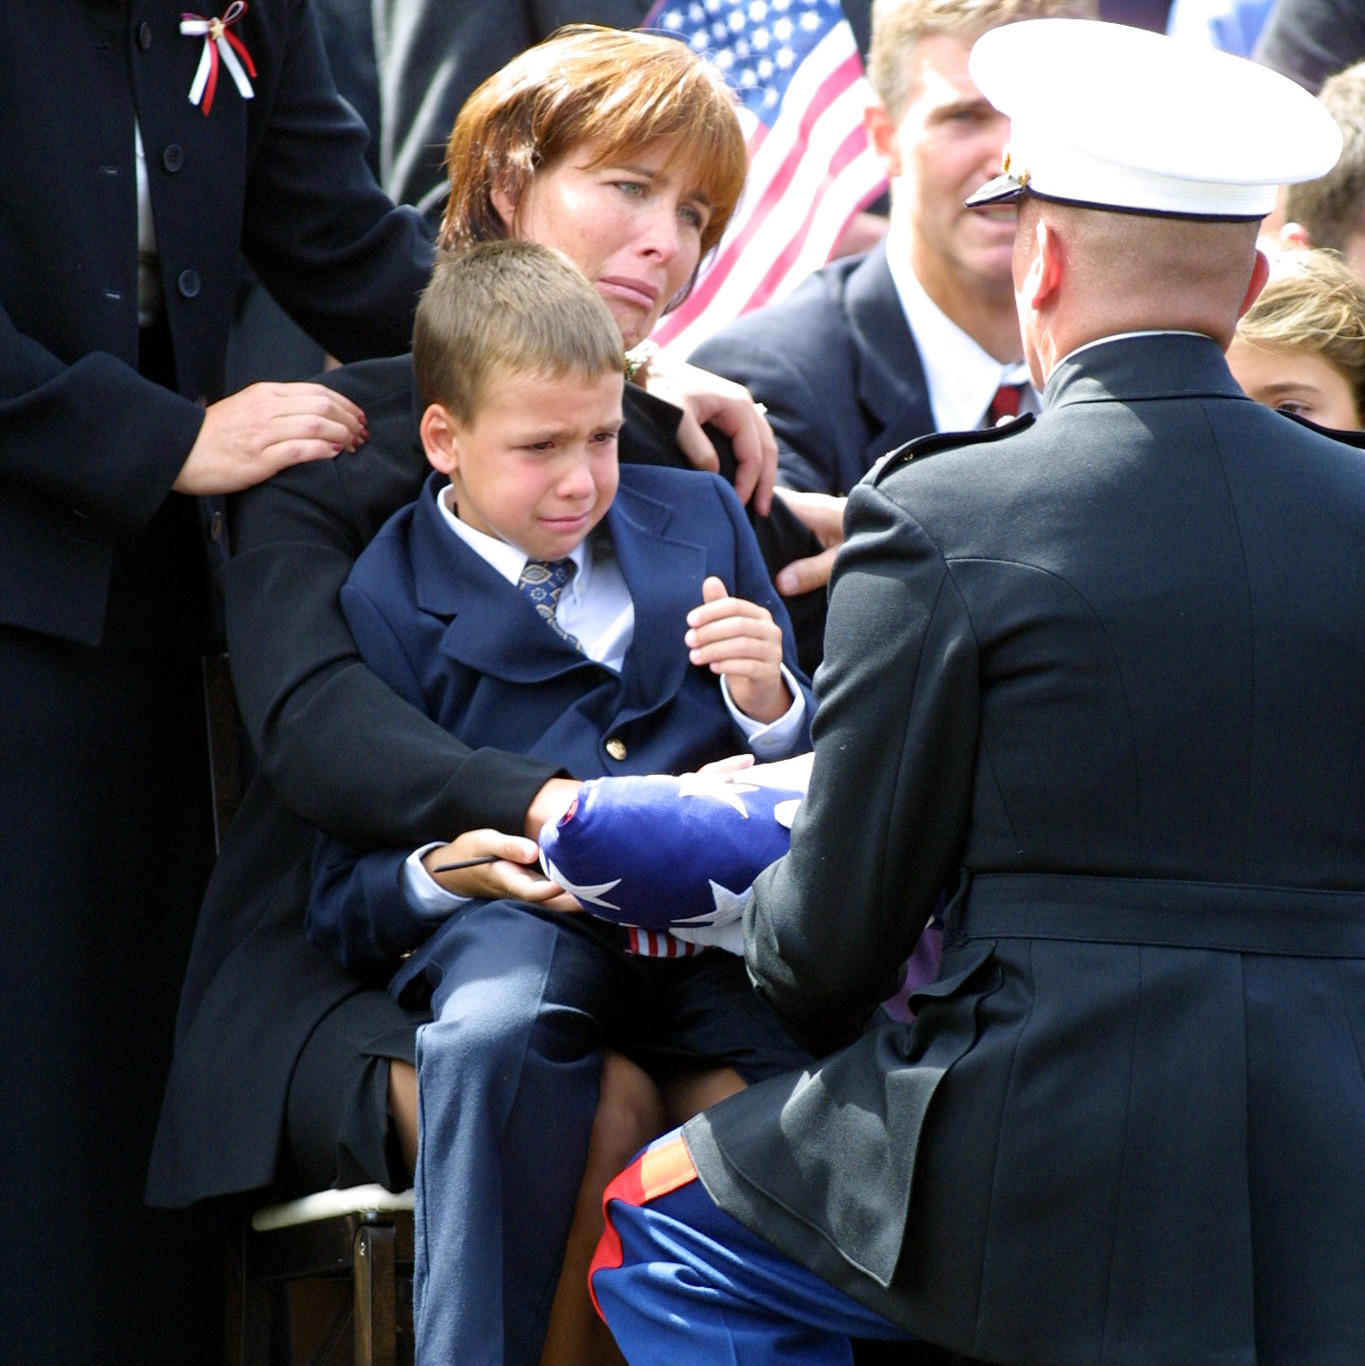 funeral flag presentation Getty Images/TOM MIHALEK